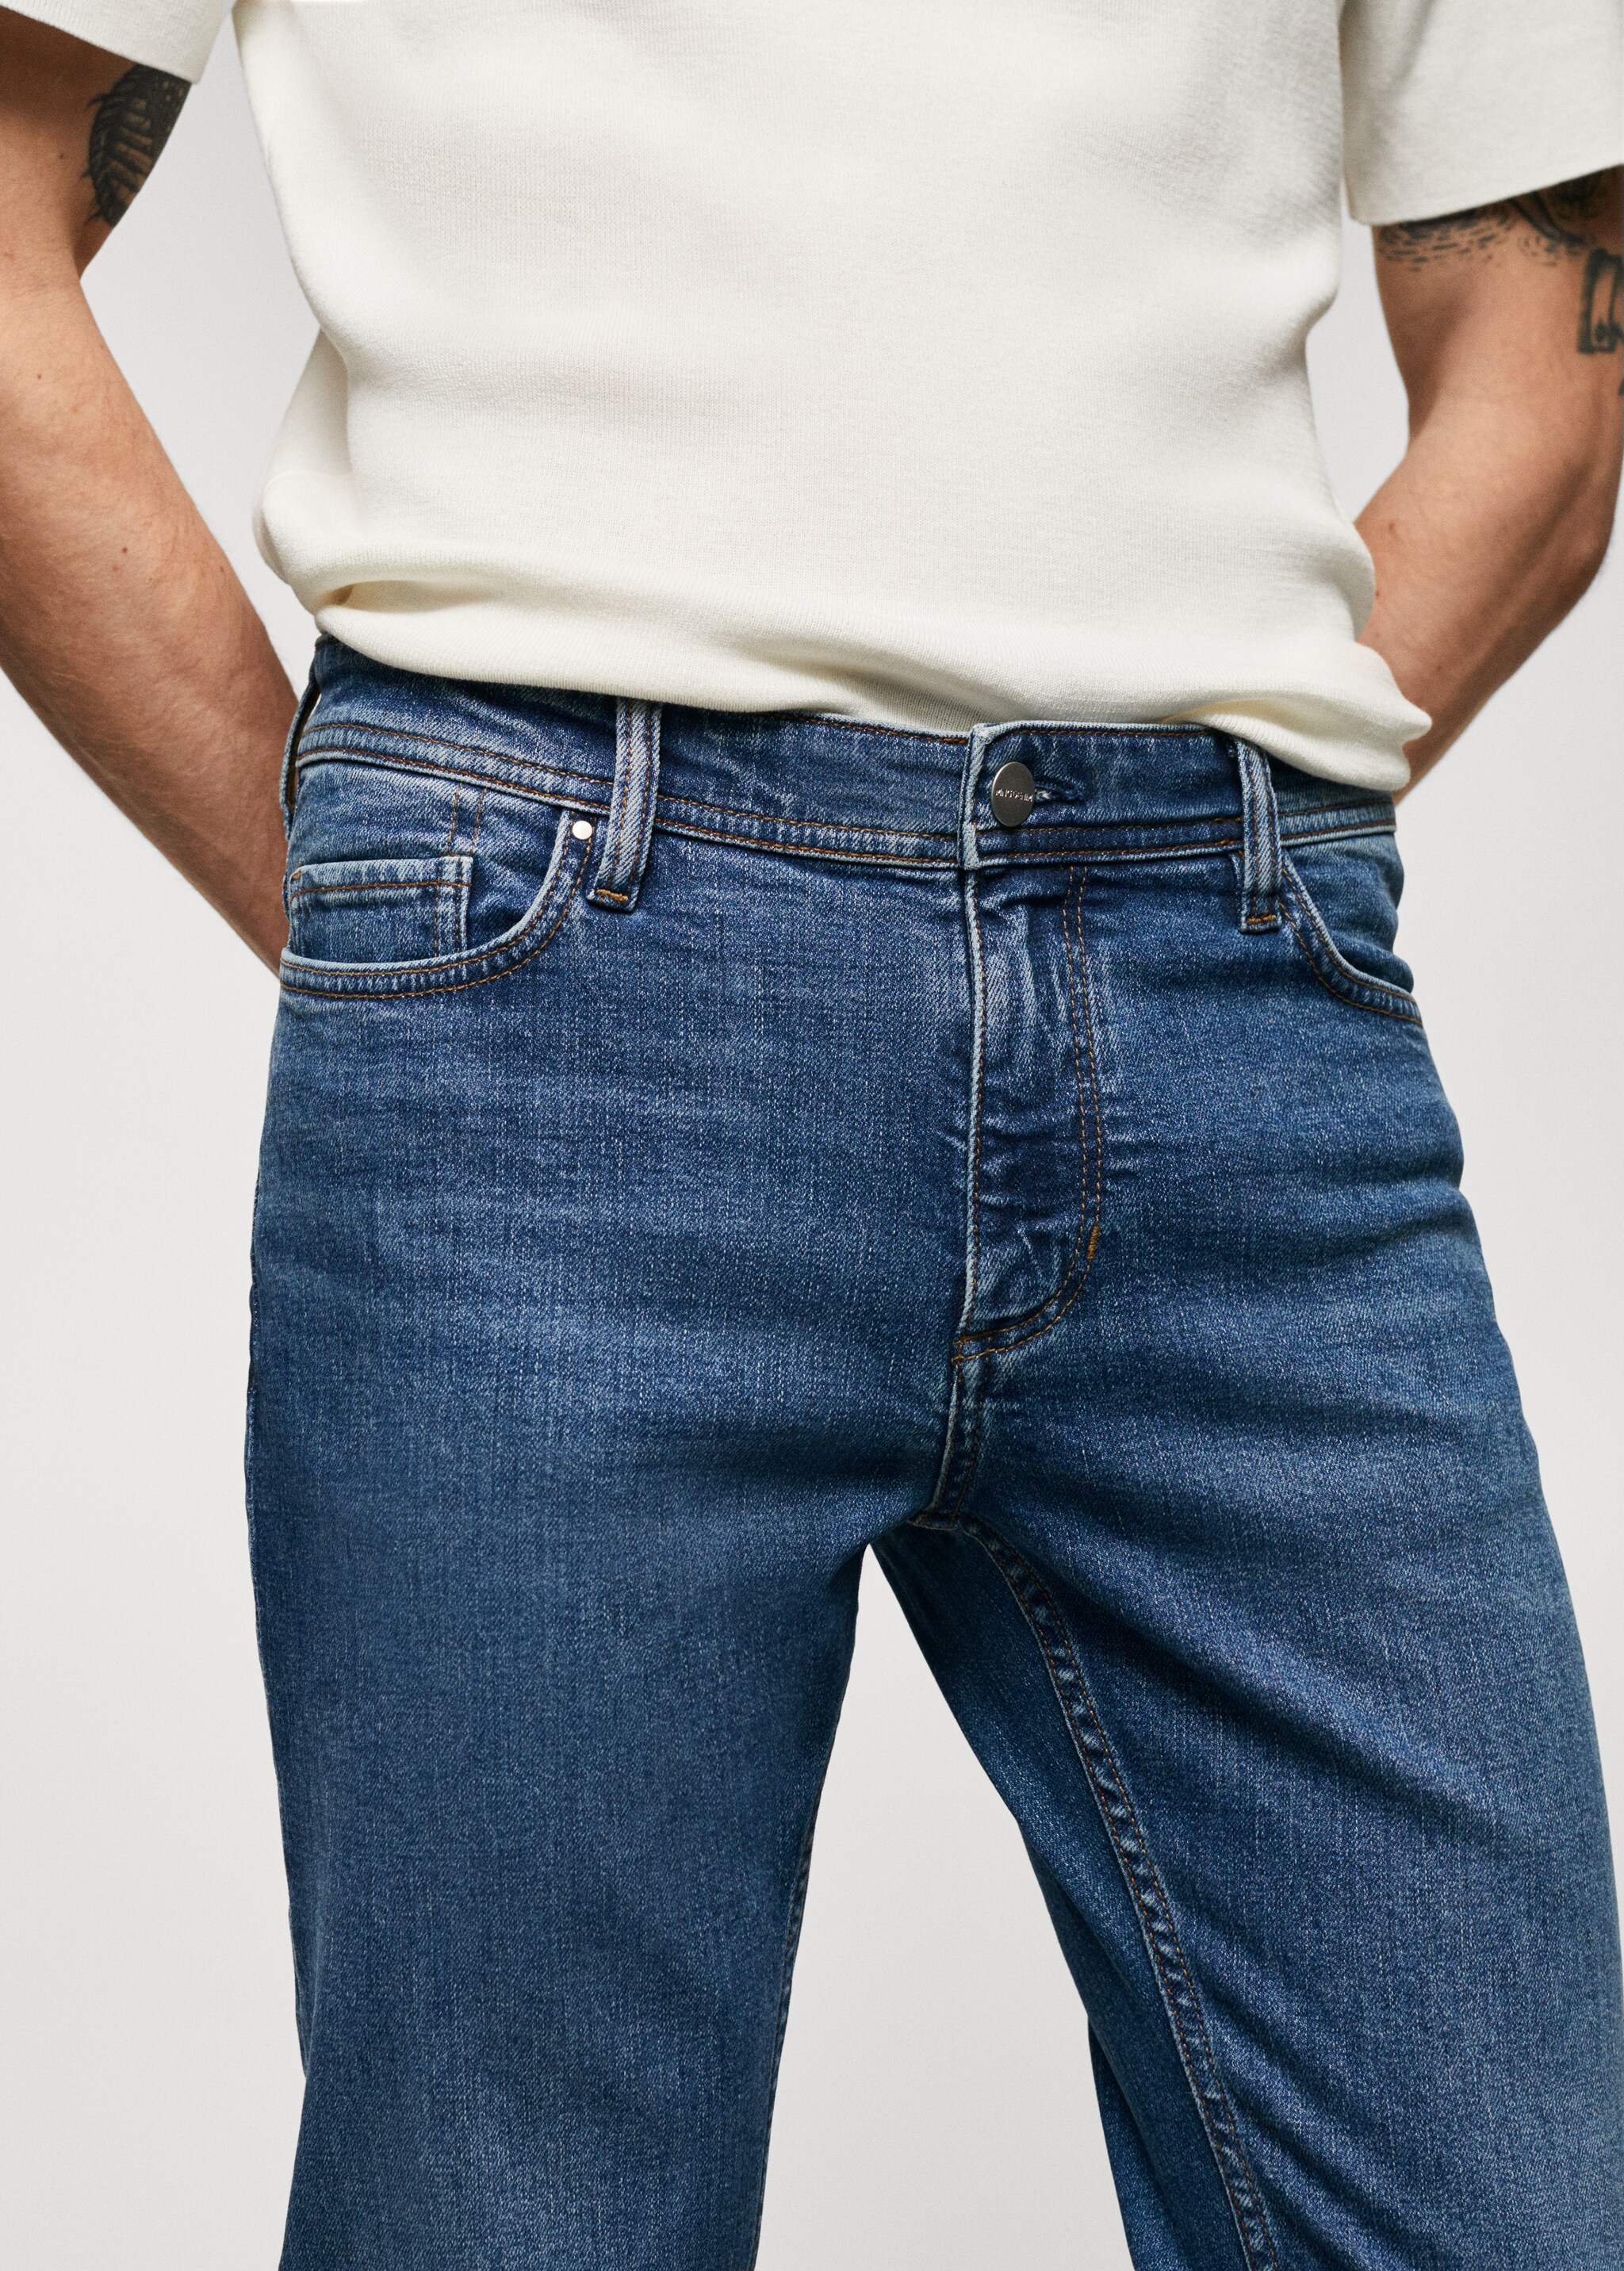 Jeans Jan slim fit - Pormenor do artigo 1